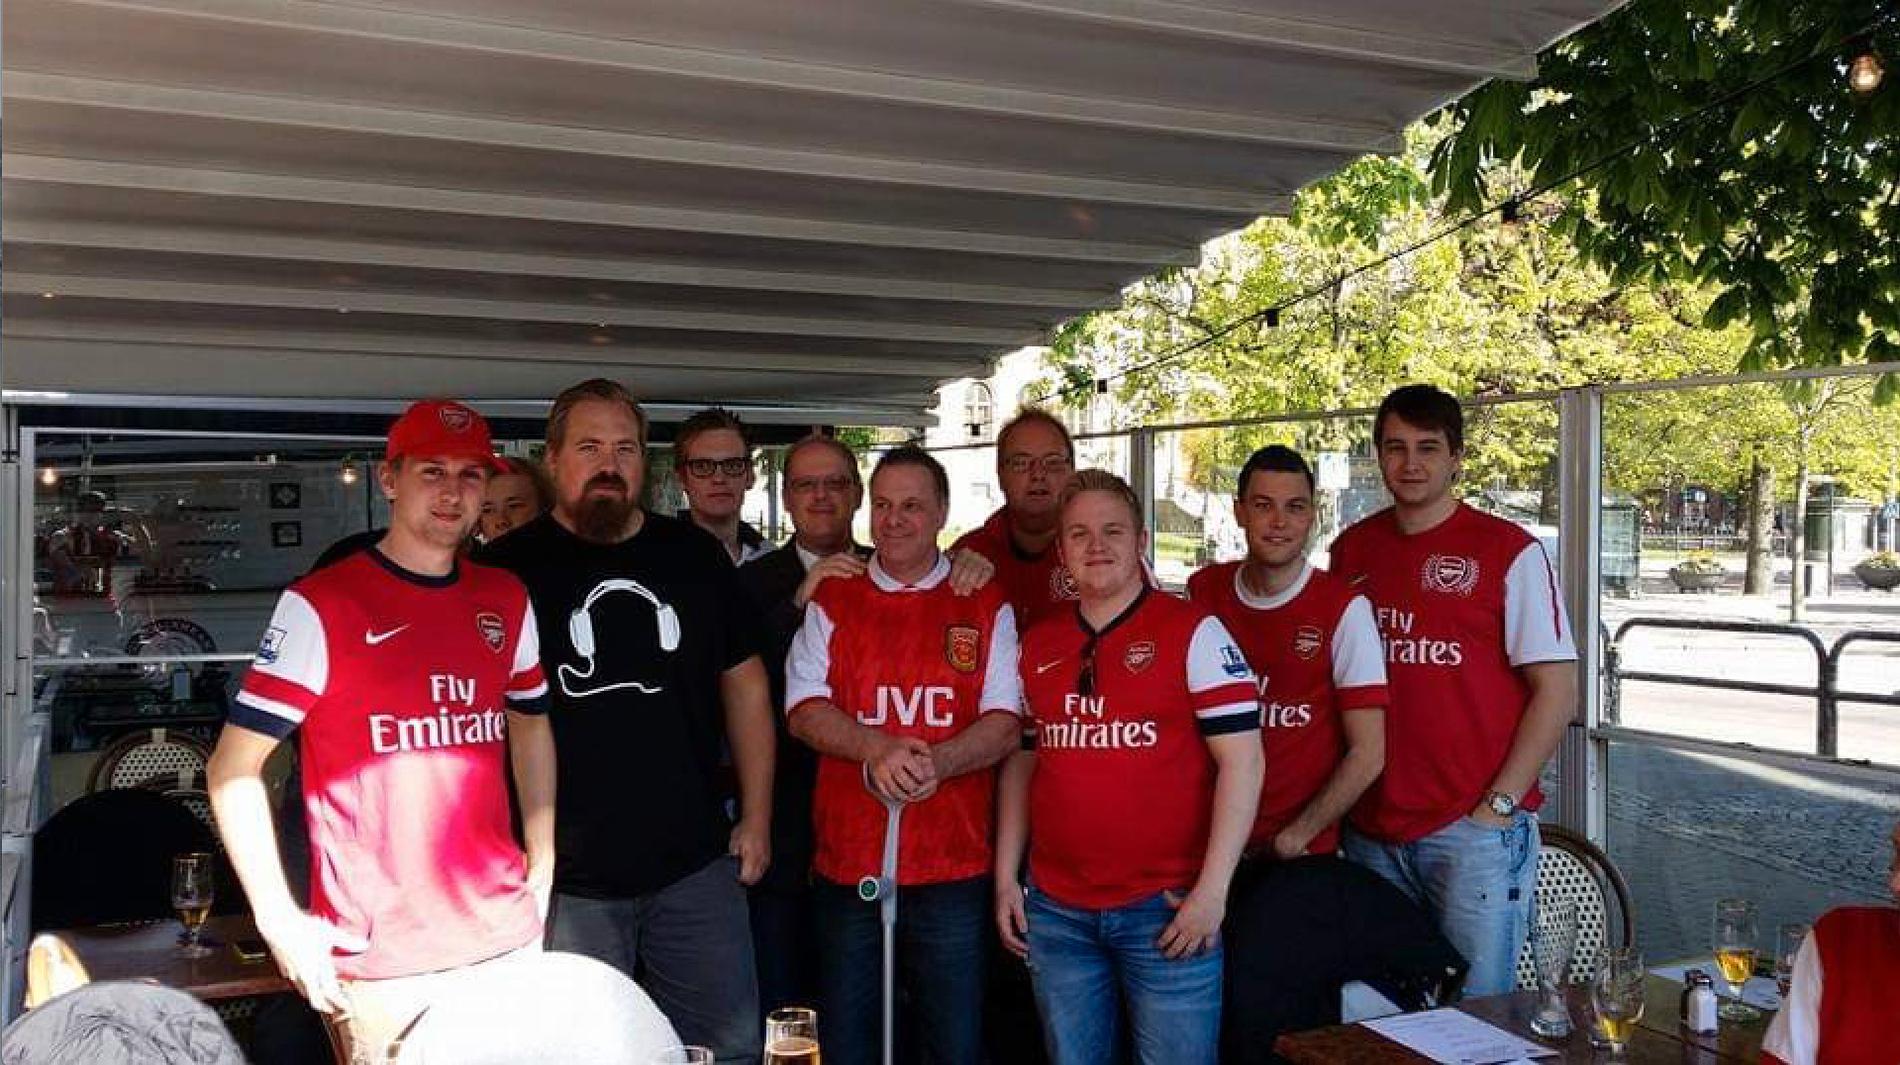 Ulf Nilsson i mitten av bilden omgiven av andra Arsenalfans.